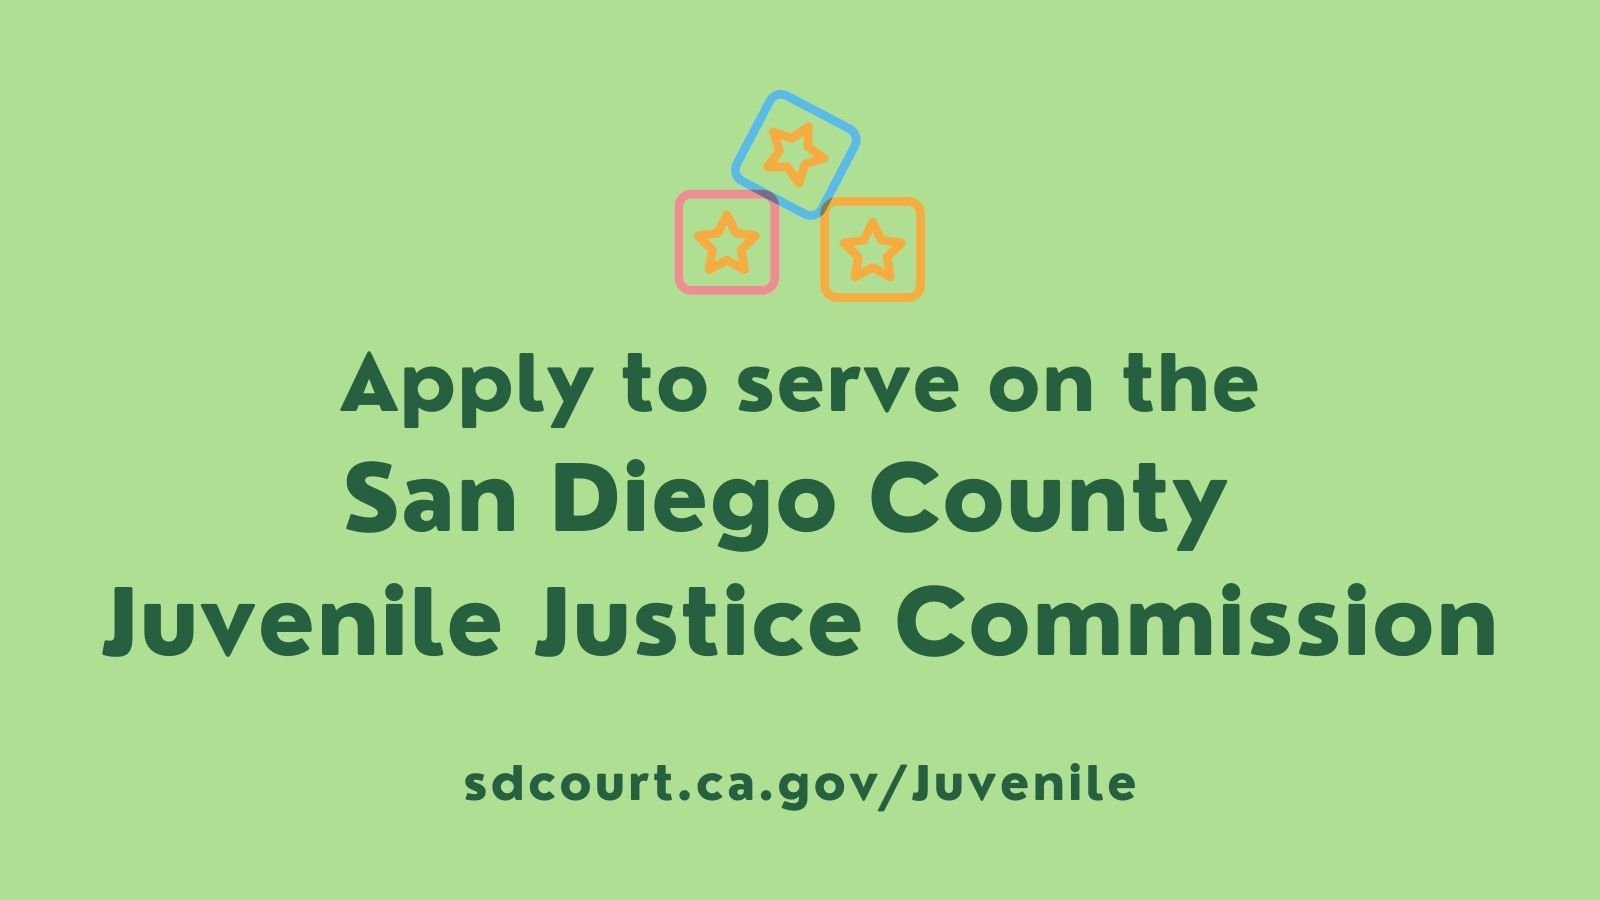 Juvenile Justice Commission